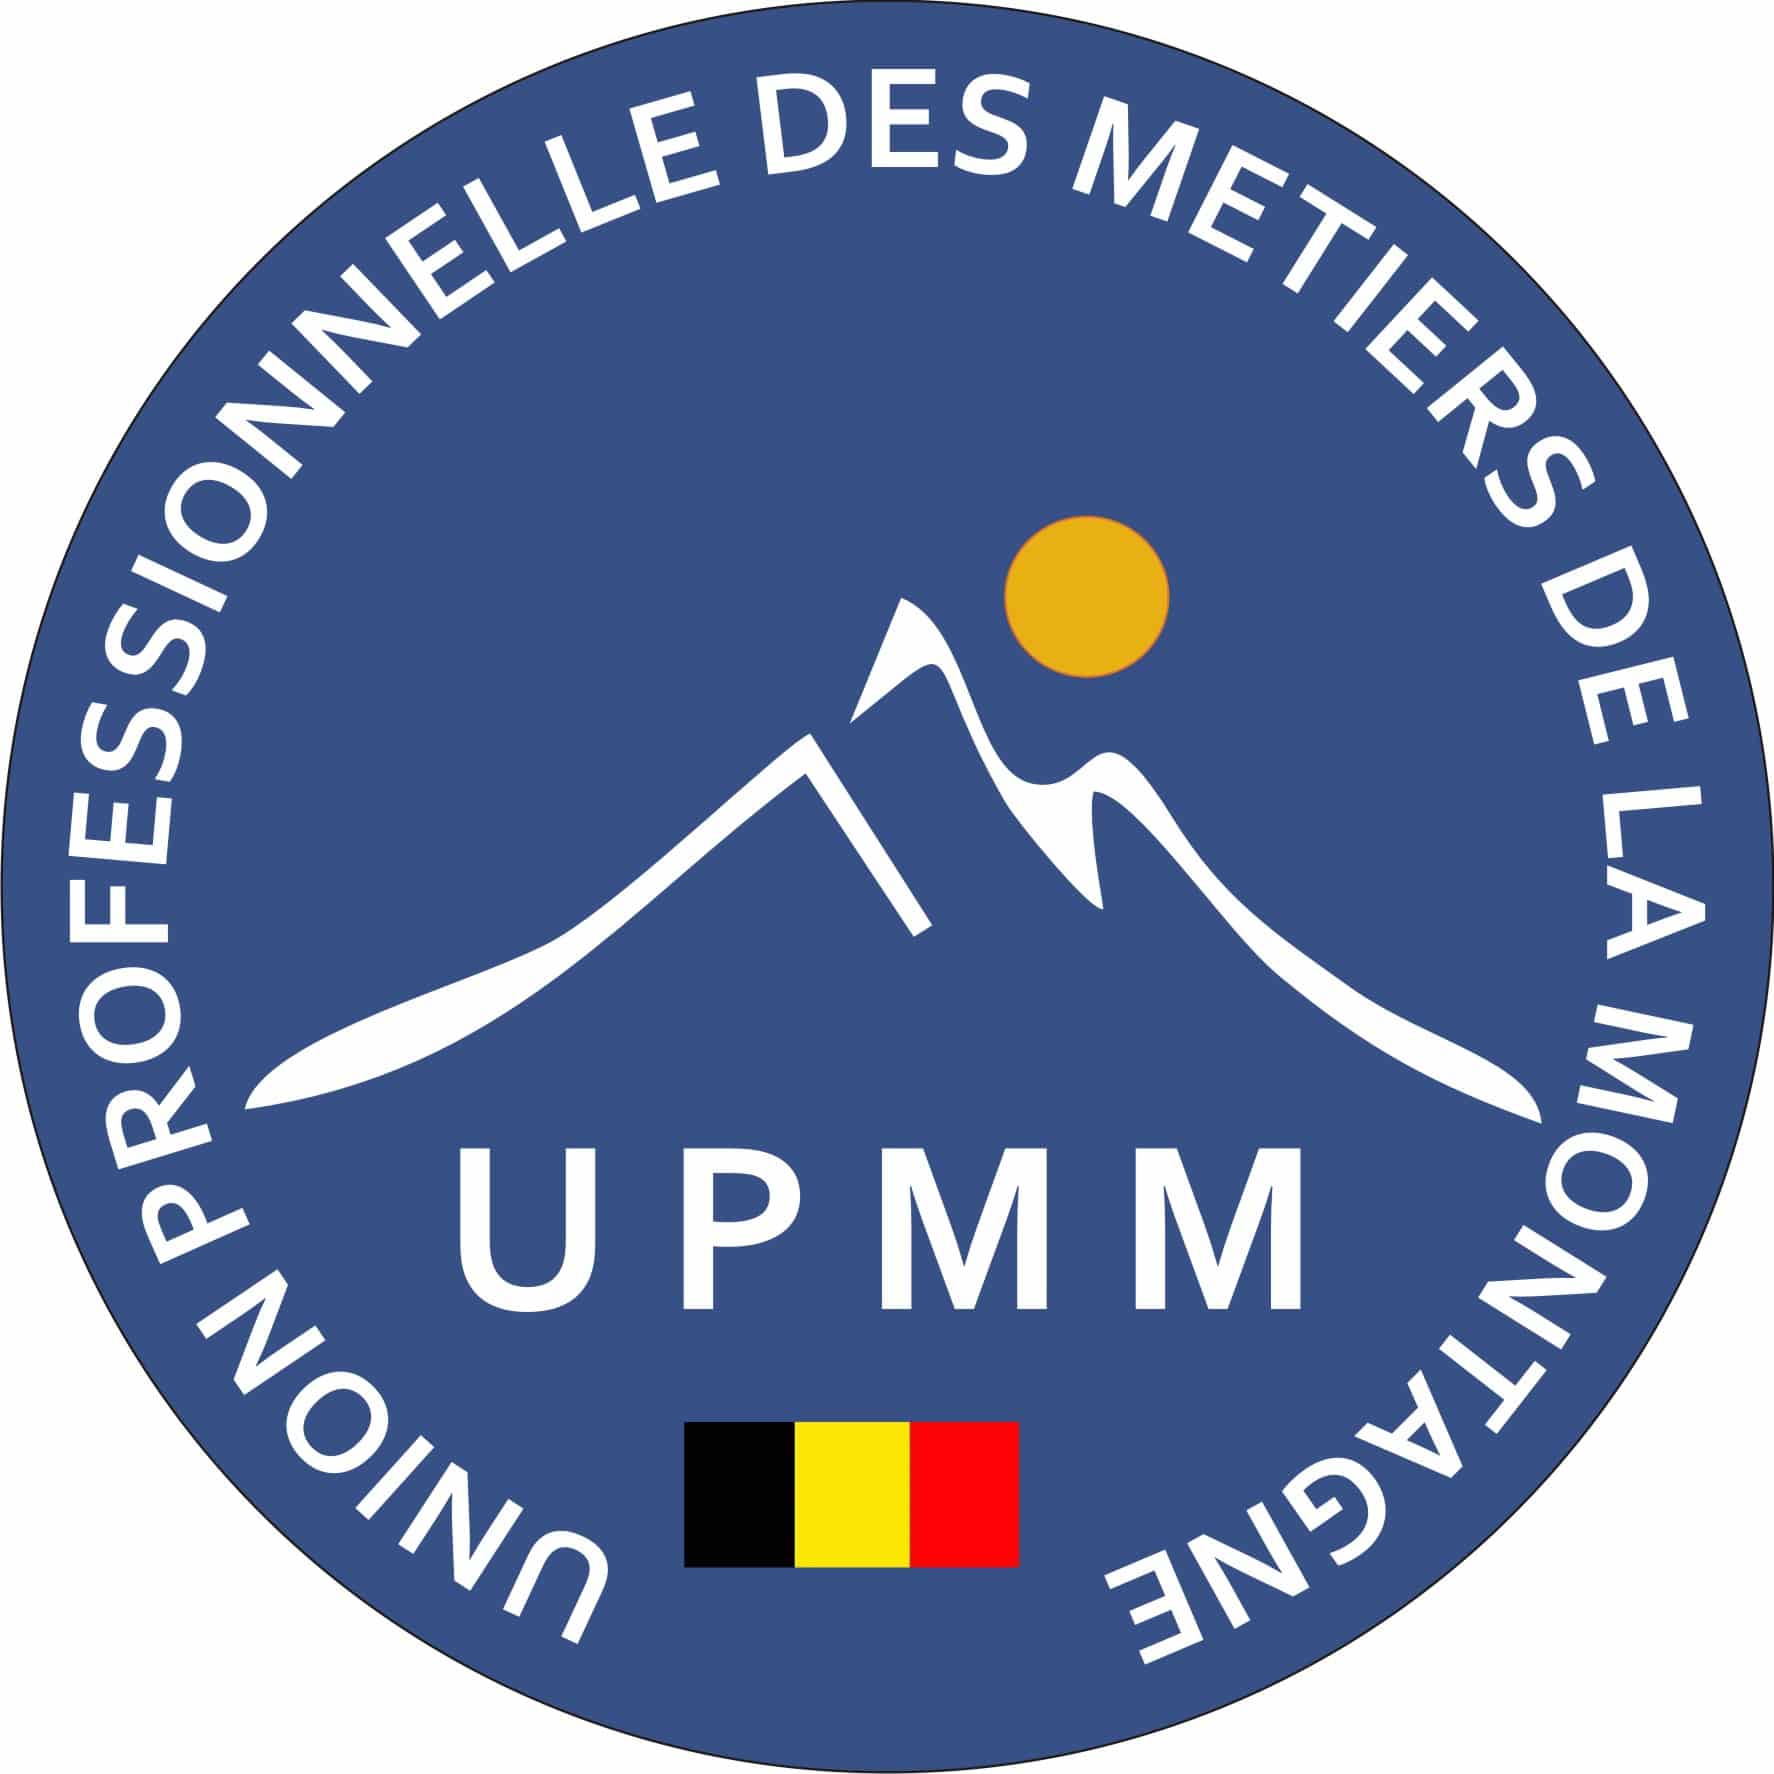 UPMM – Union Professionnelle des métiers de la Montagne